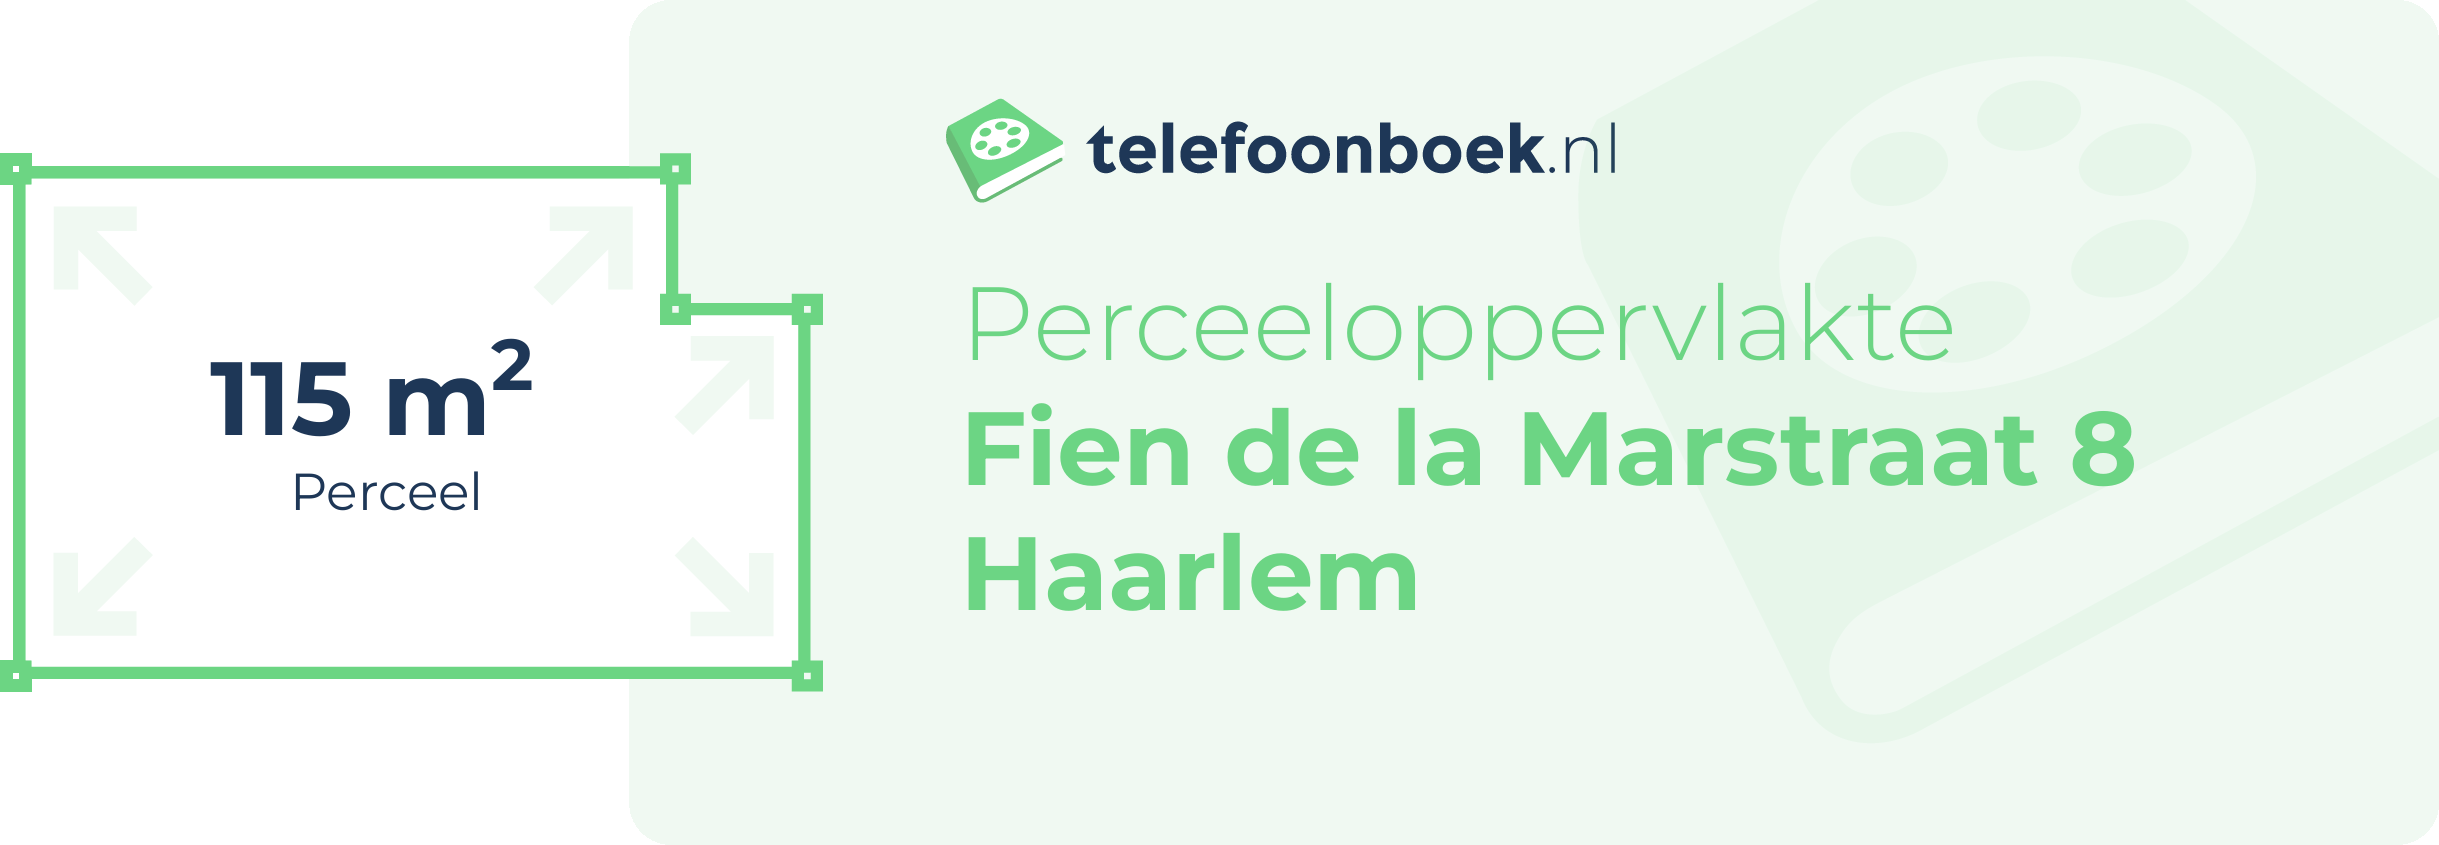 Perceeloppervlakte Fien De La Marstraat 8 Haarlem